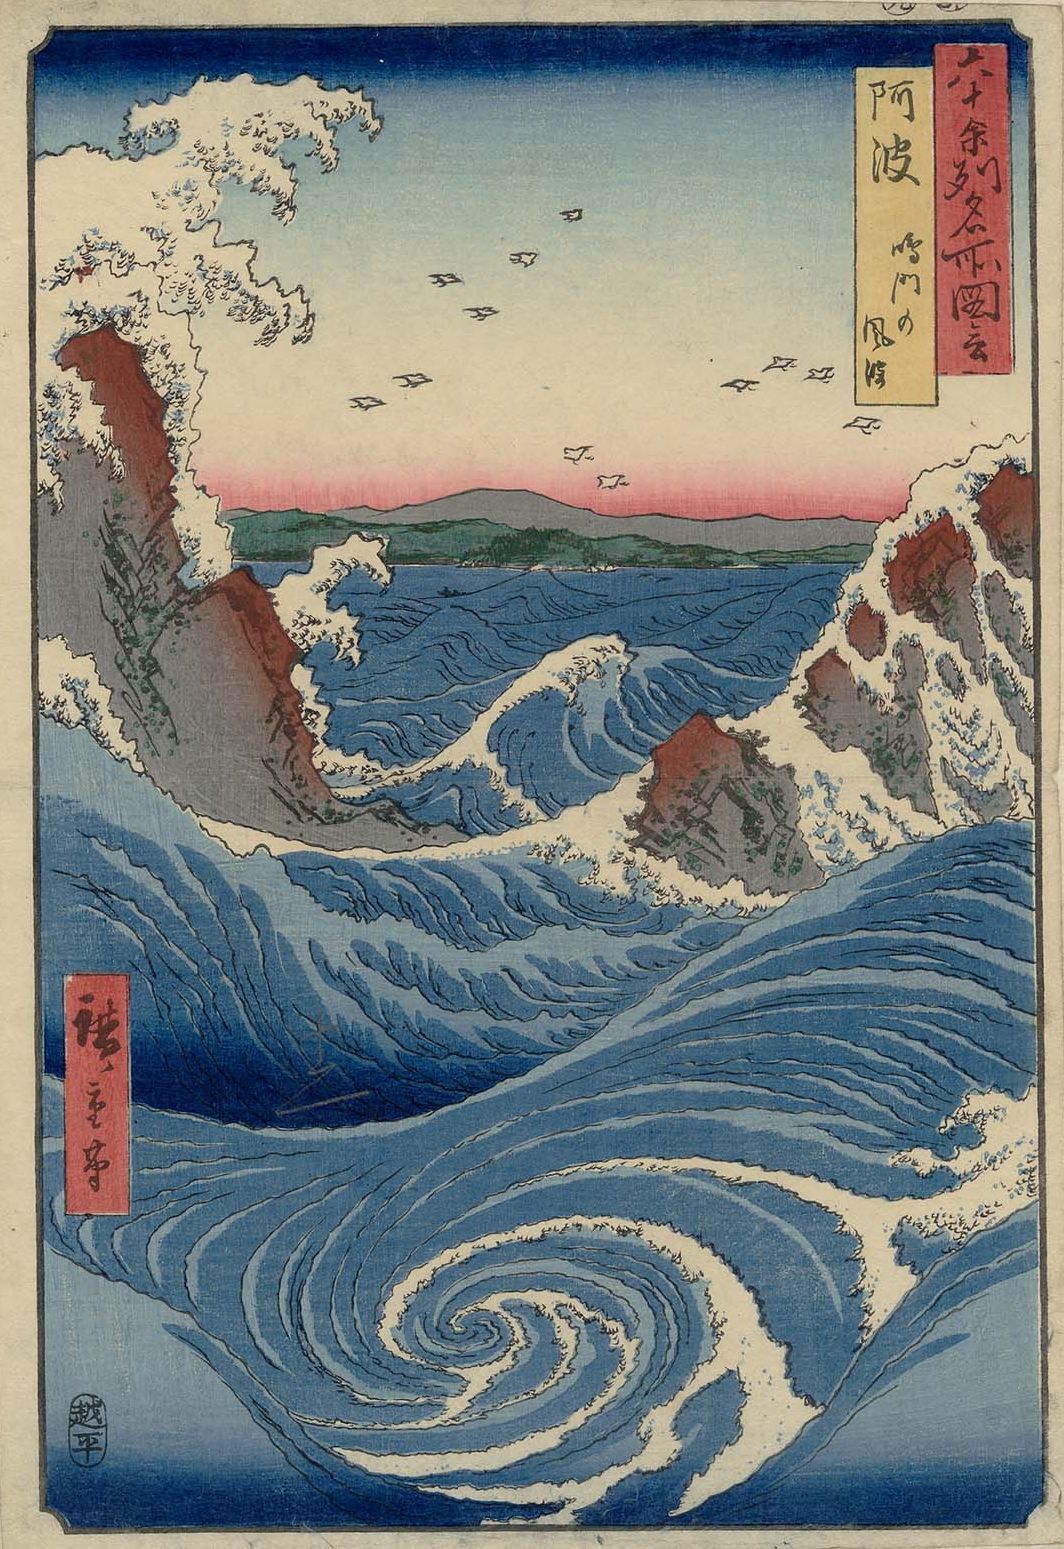 Вир Наруто by  Hiroshige - 1856 - 35.6 × 24.4 см 